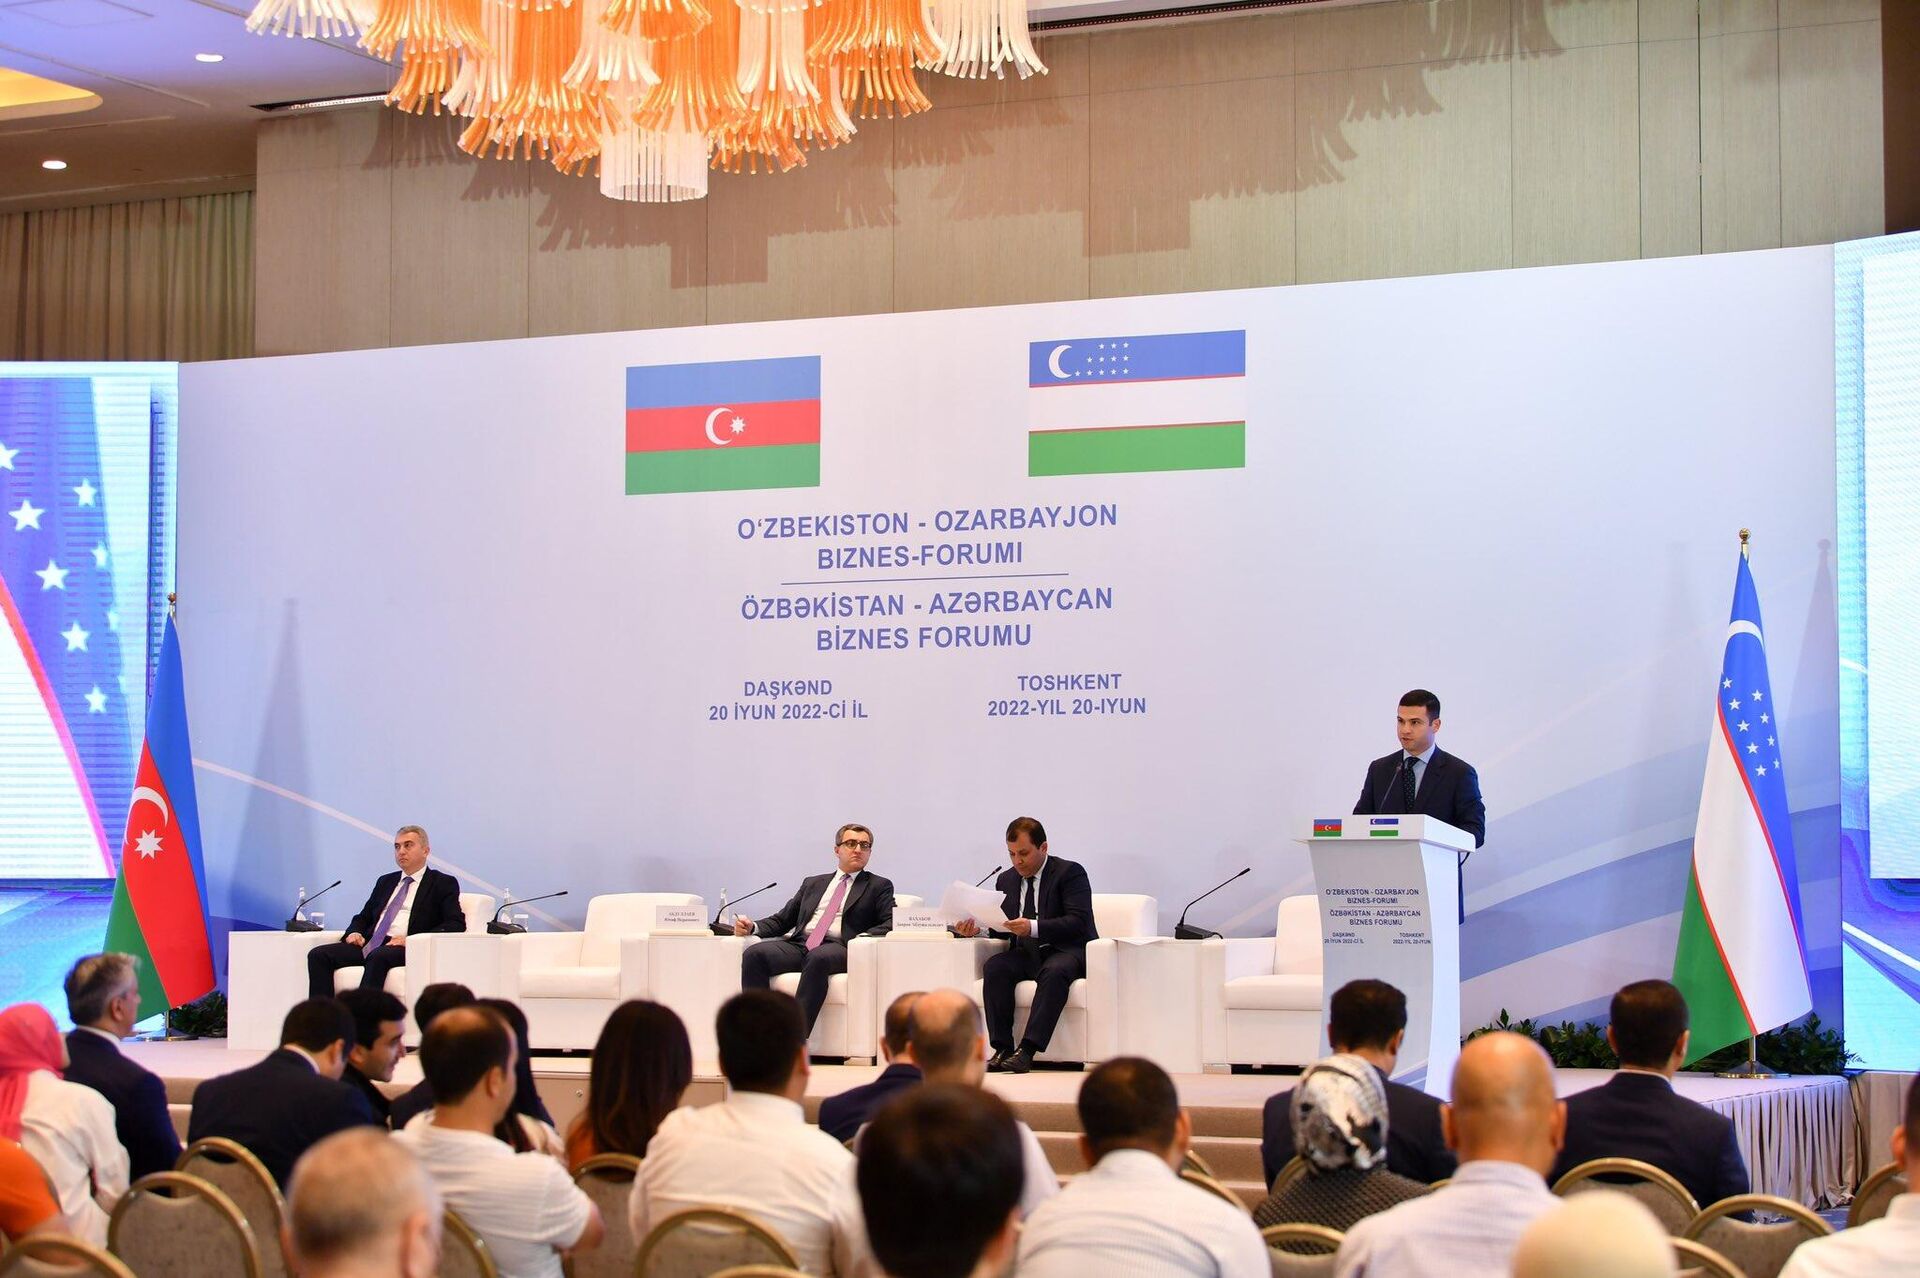 Daşkənddə Özbəkistan - Azərbaycan biznes forumu  - Sputnik Азербайджан, 1920, 21.06.2022